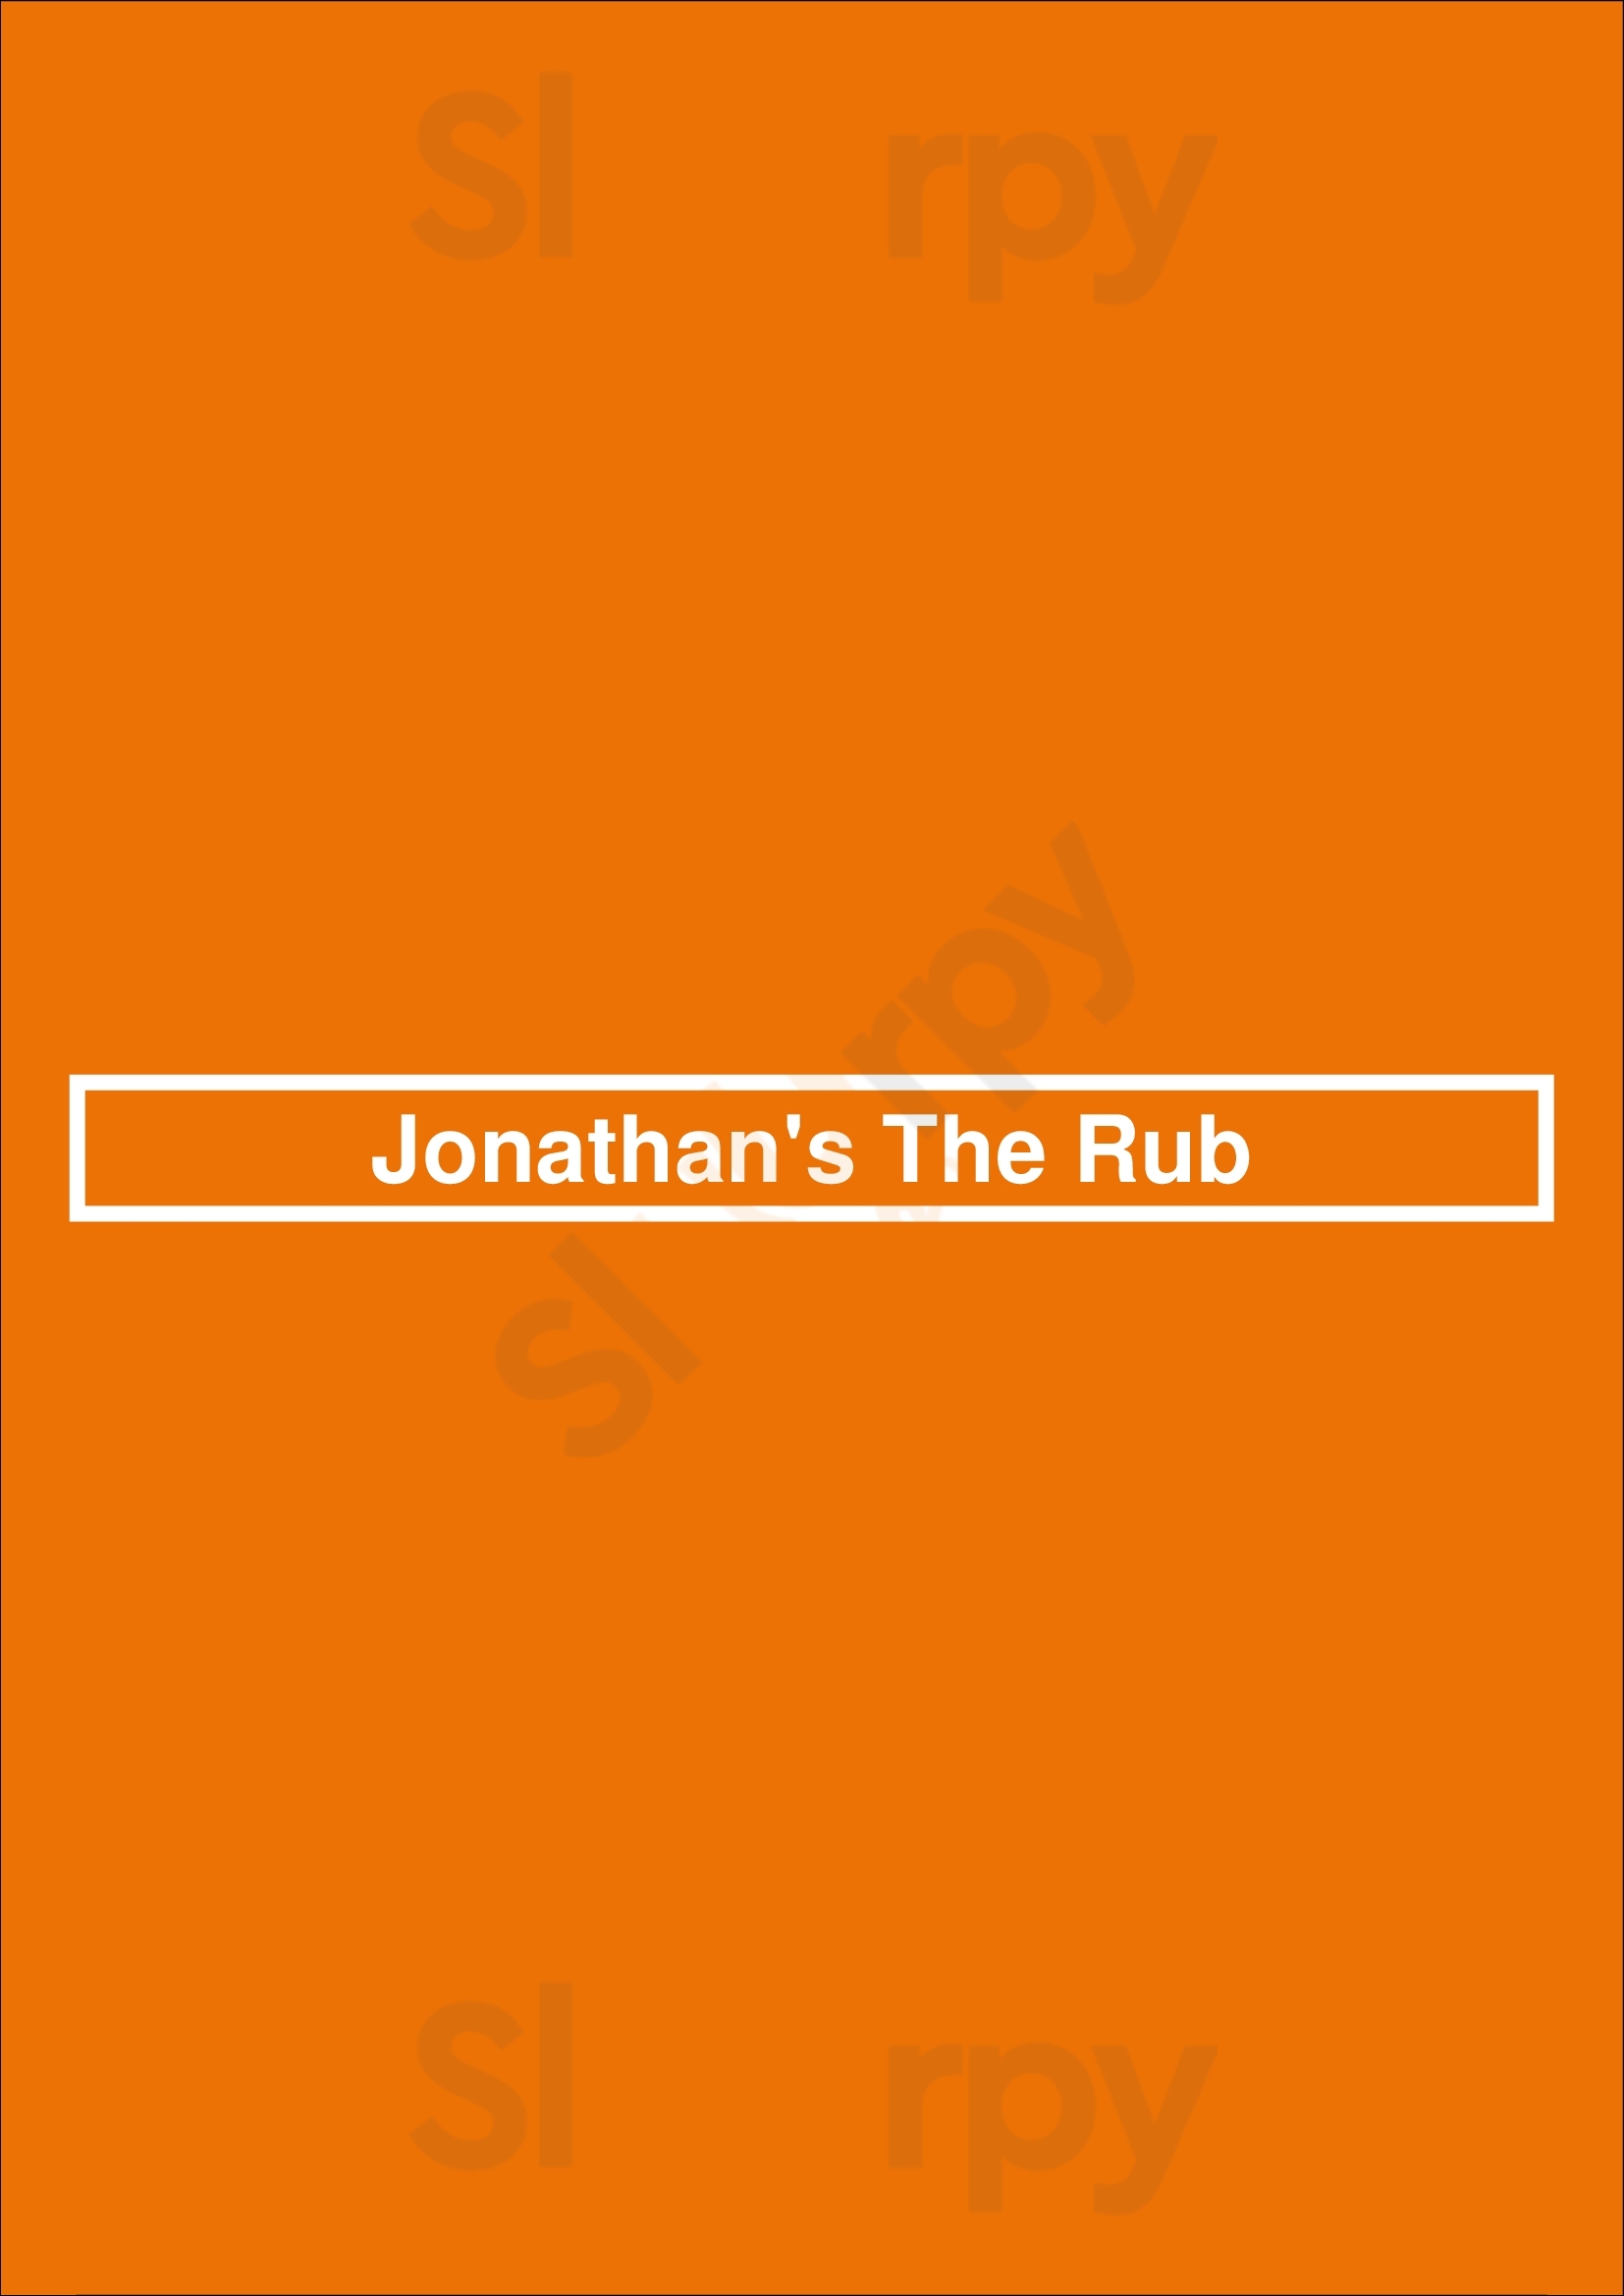 Jonathan's The Rub Houston Menu - 1